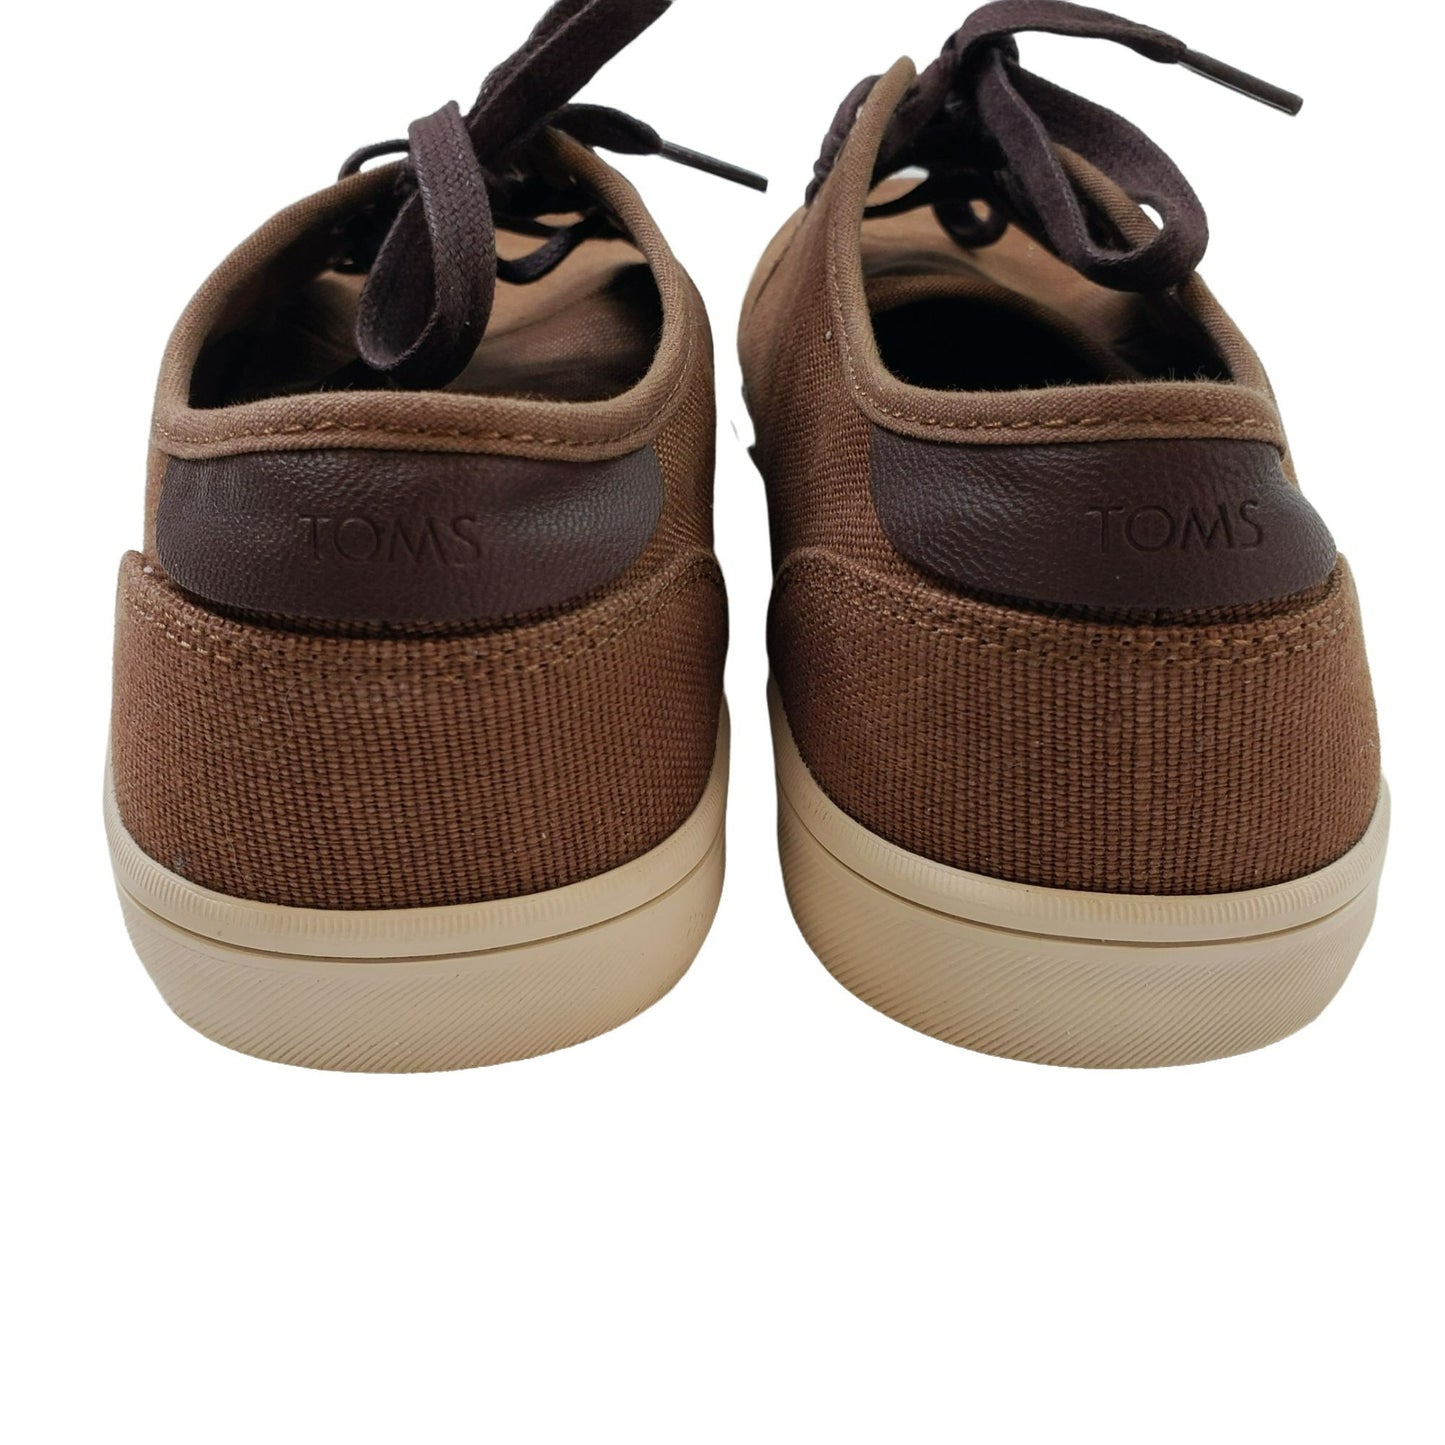 Toms Carlo Terrain Sneakers Size 9